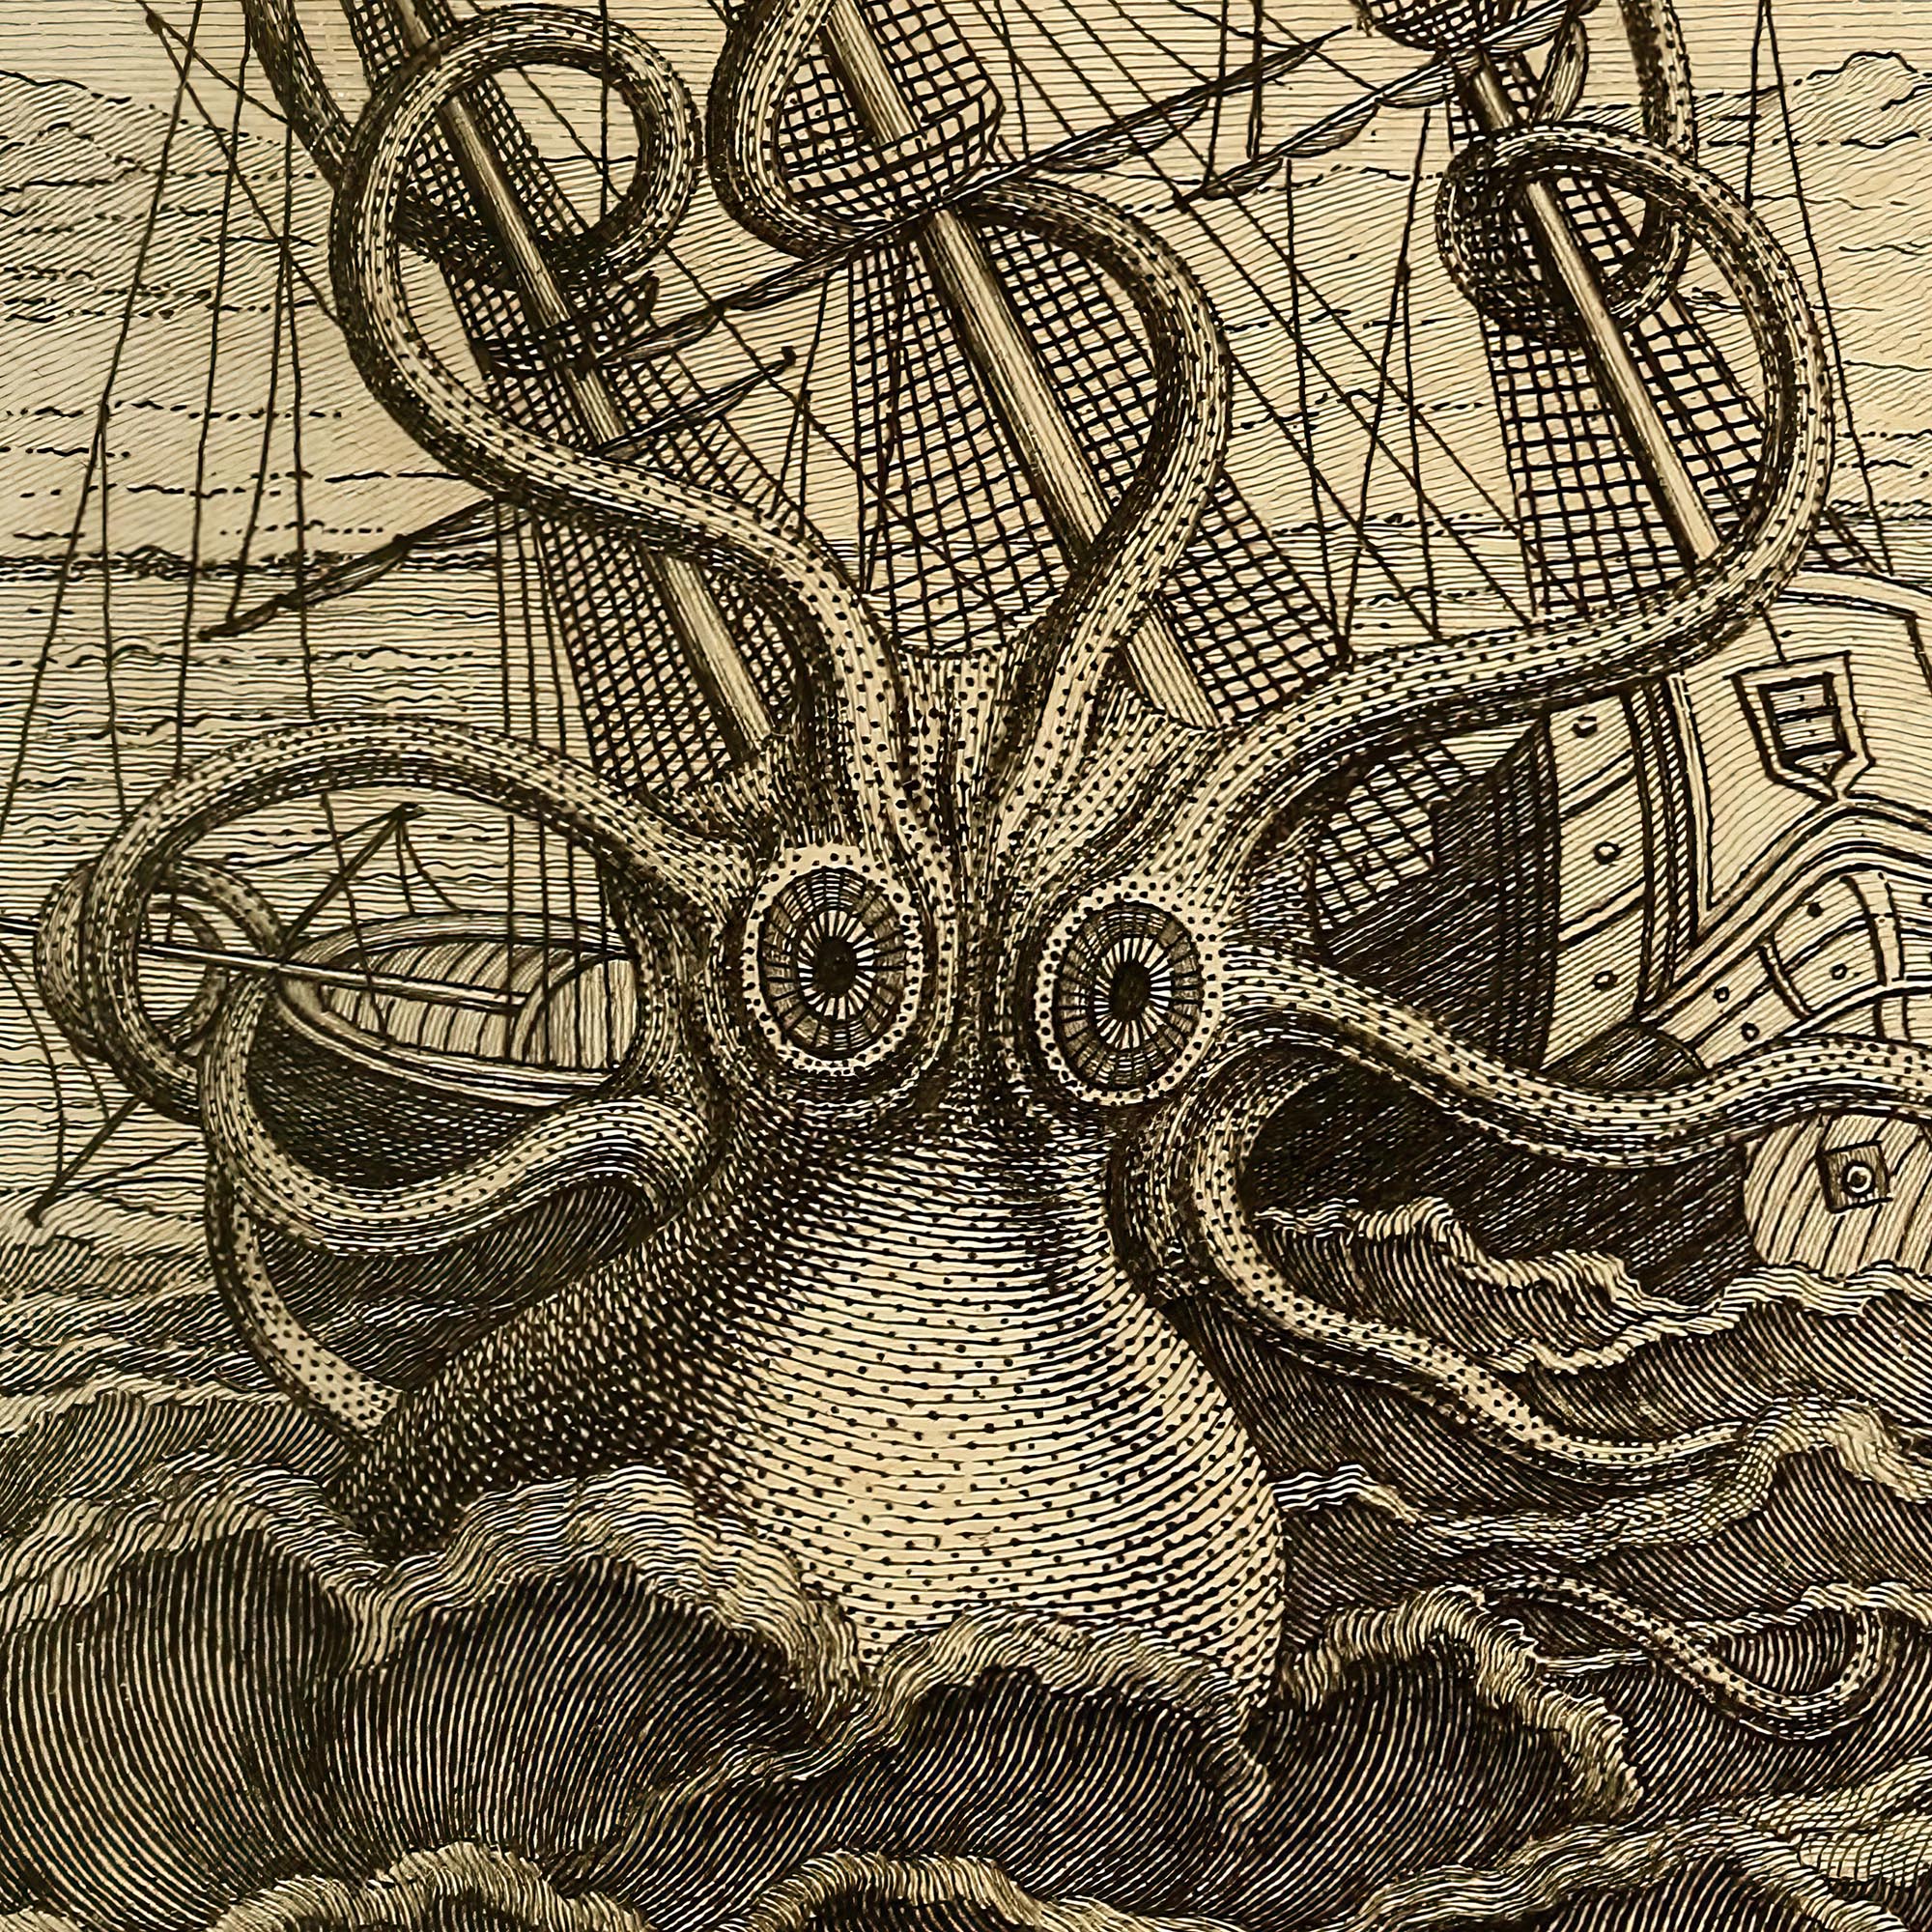 Fine art Framed Kraken Sea Monster Attacking Ship | Norse Viking Mythology Giant Squid, Octopus Antique Framed Fine Art Print